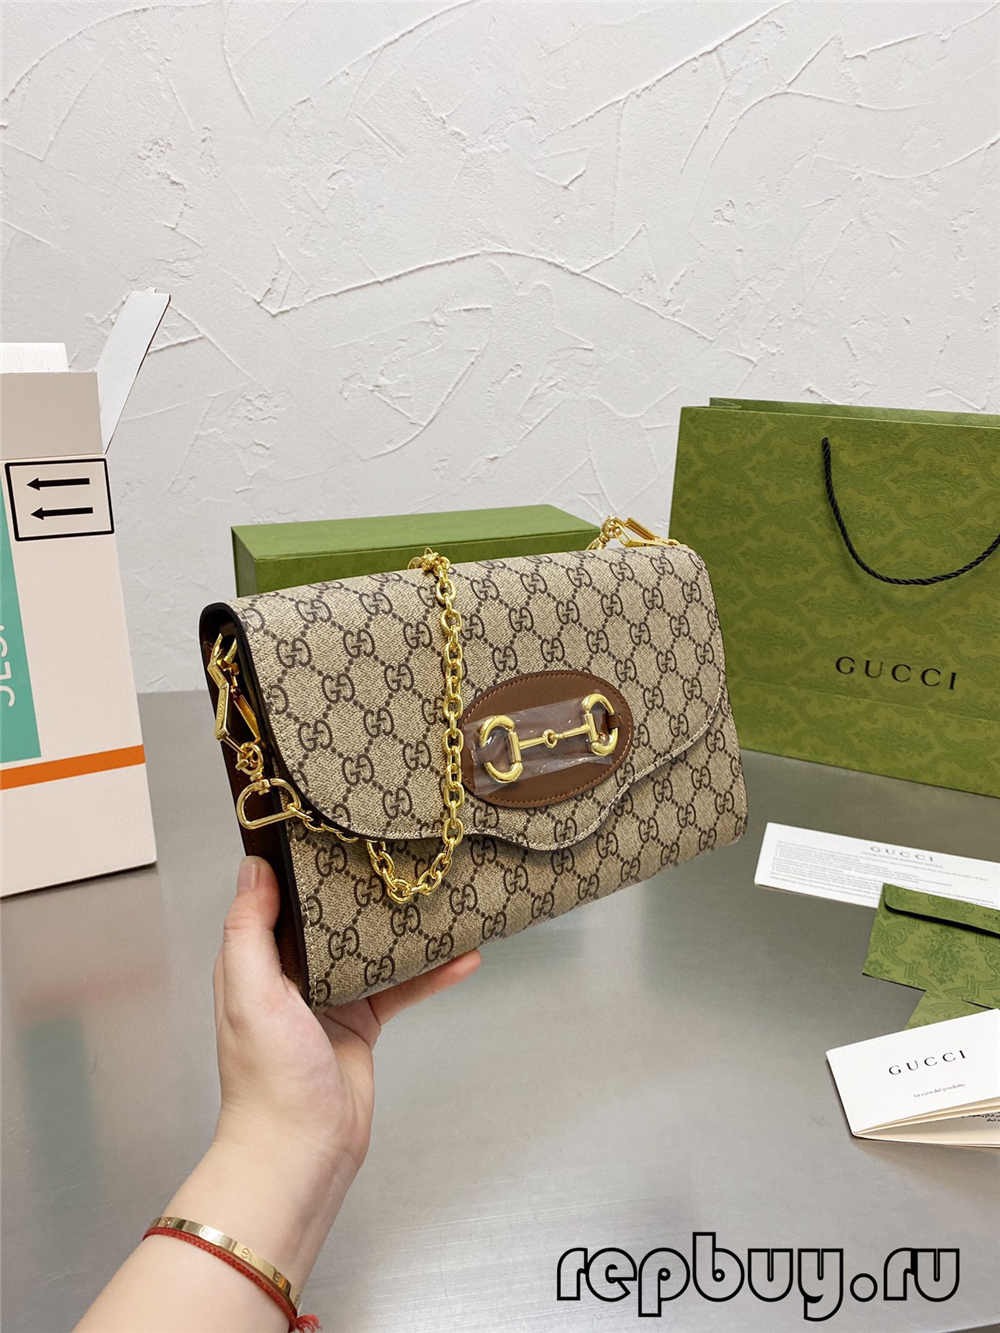 Gucci 1955 Horsebit kalitate oneneko erreplika poltsa (2022 eguneratua)-Best Quality Fake Louis Vuitton Bag Online Store, Replica designer bag ru